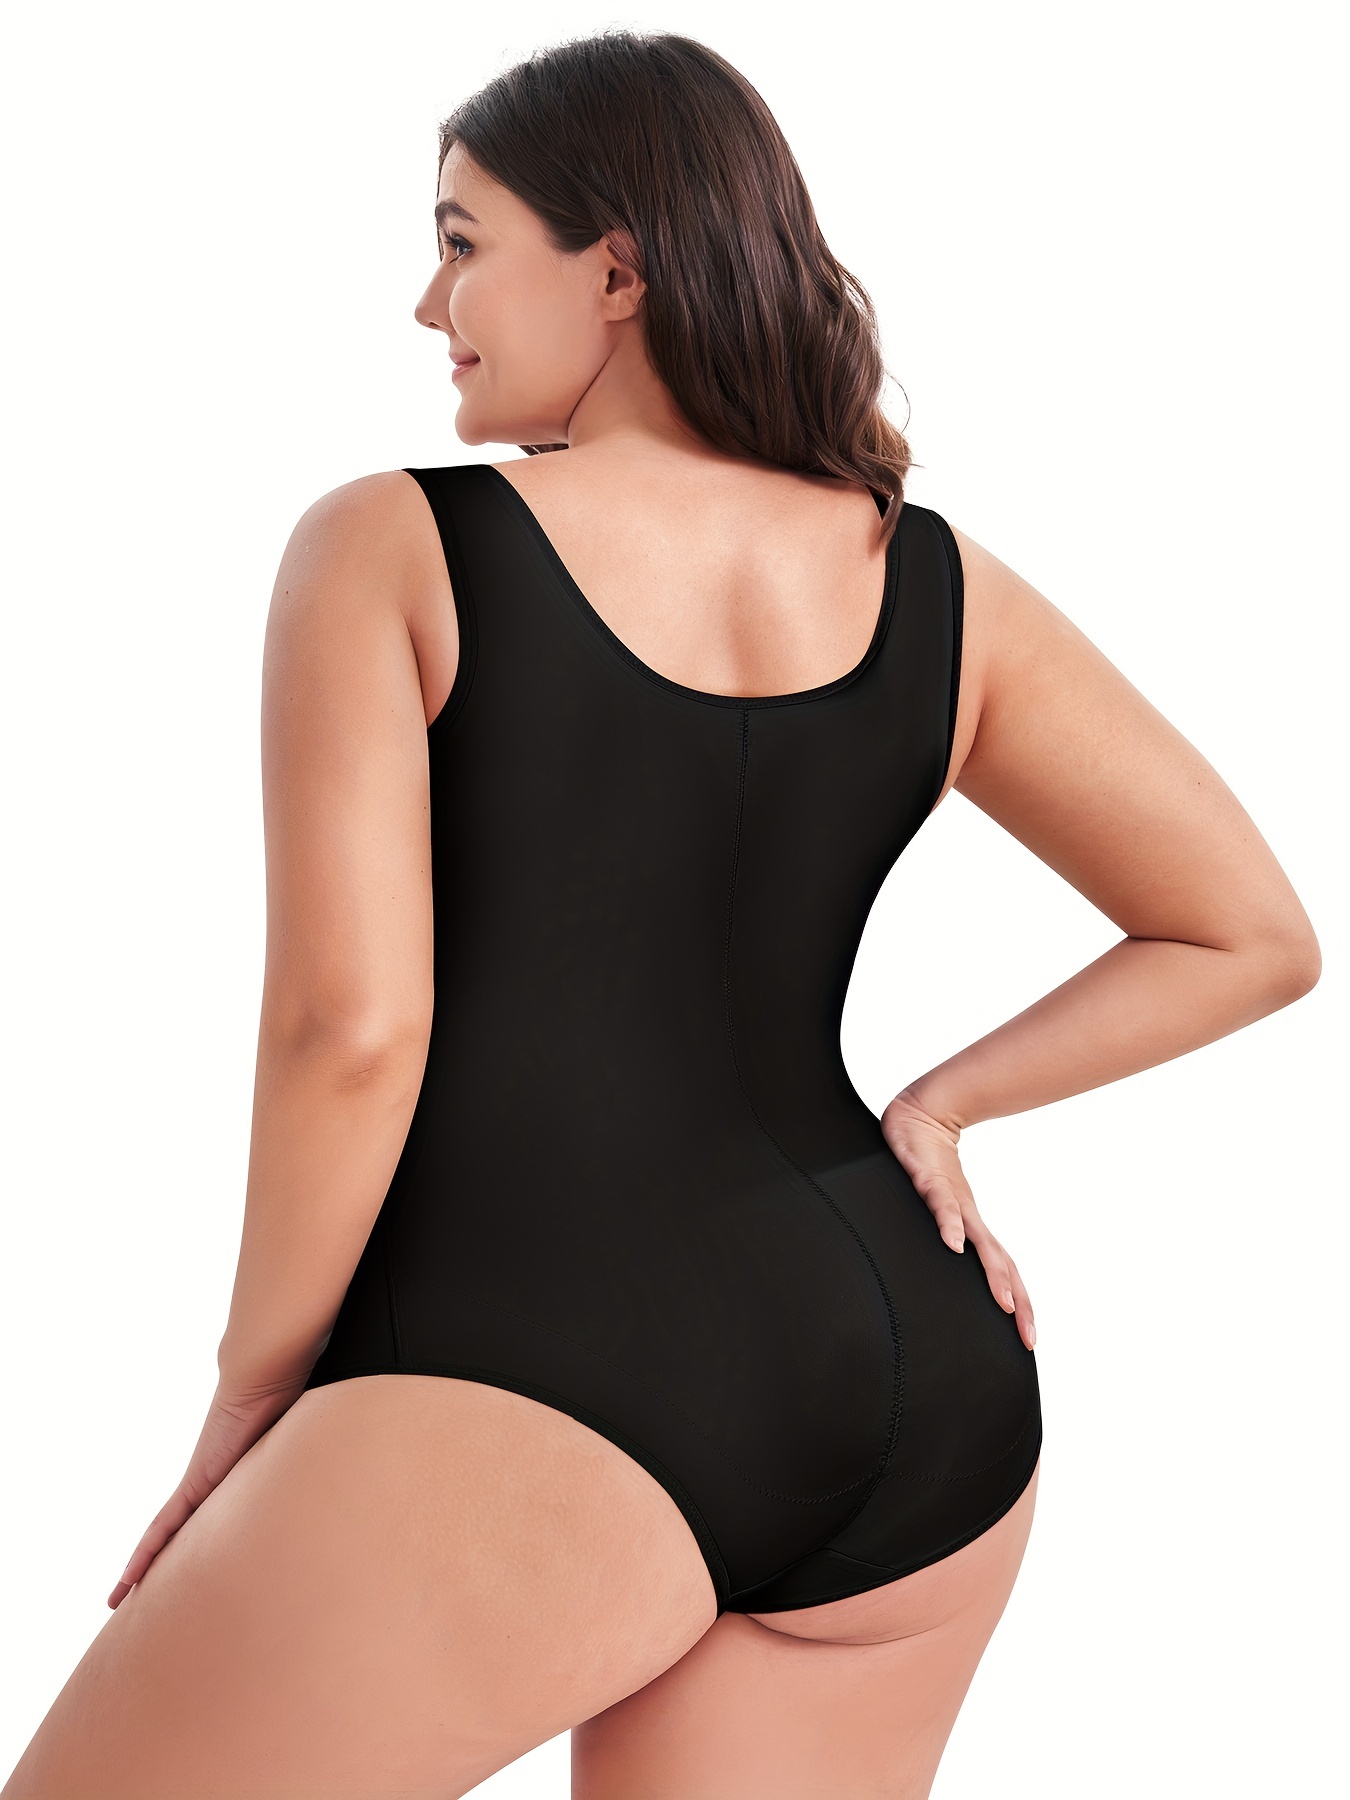 Tummy Control Seamless Bodysuit Plus Size